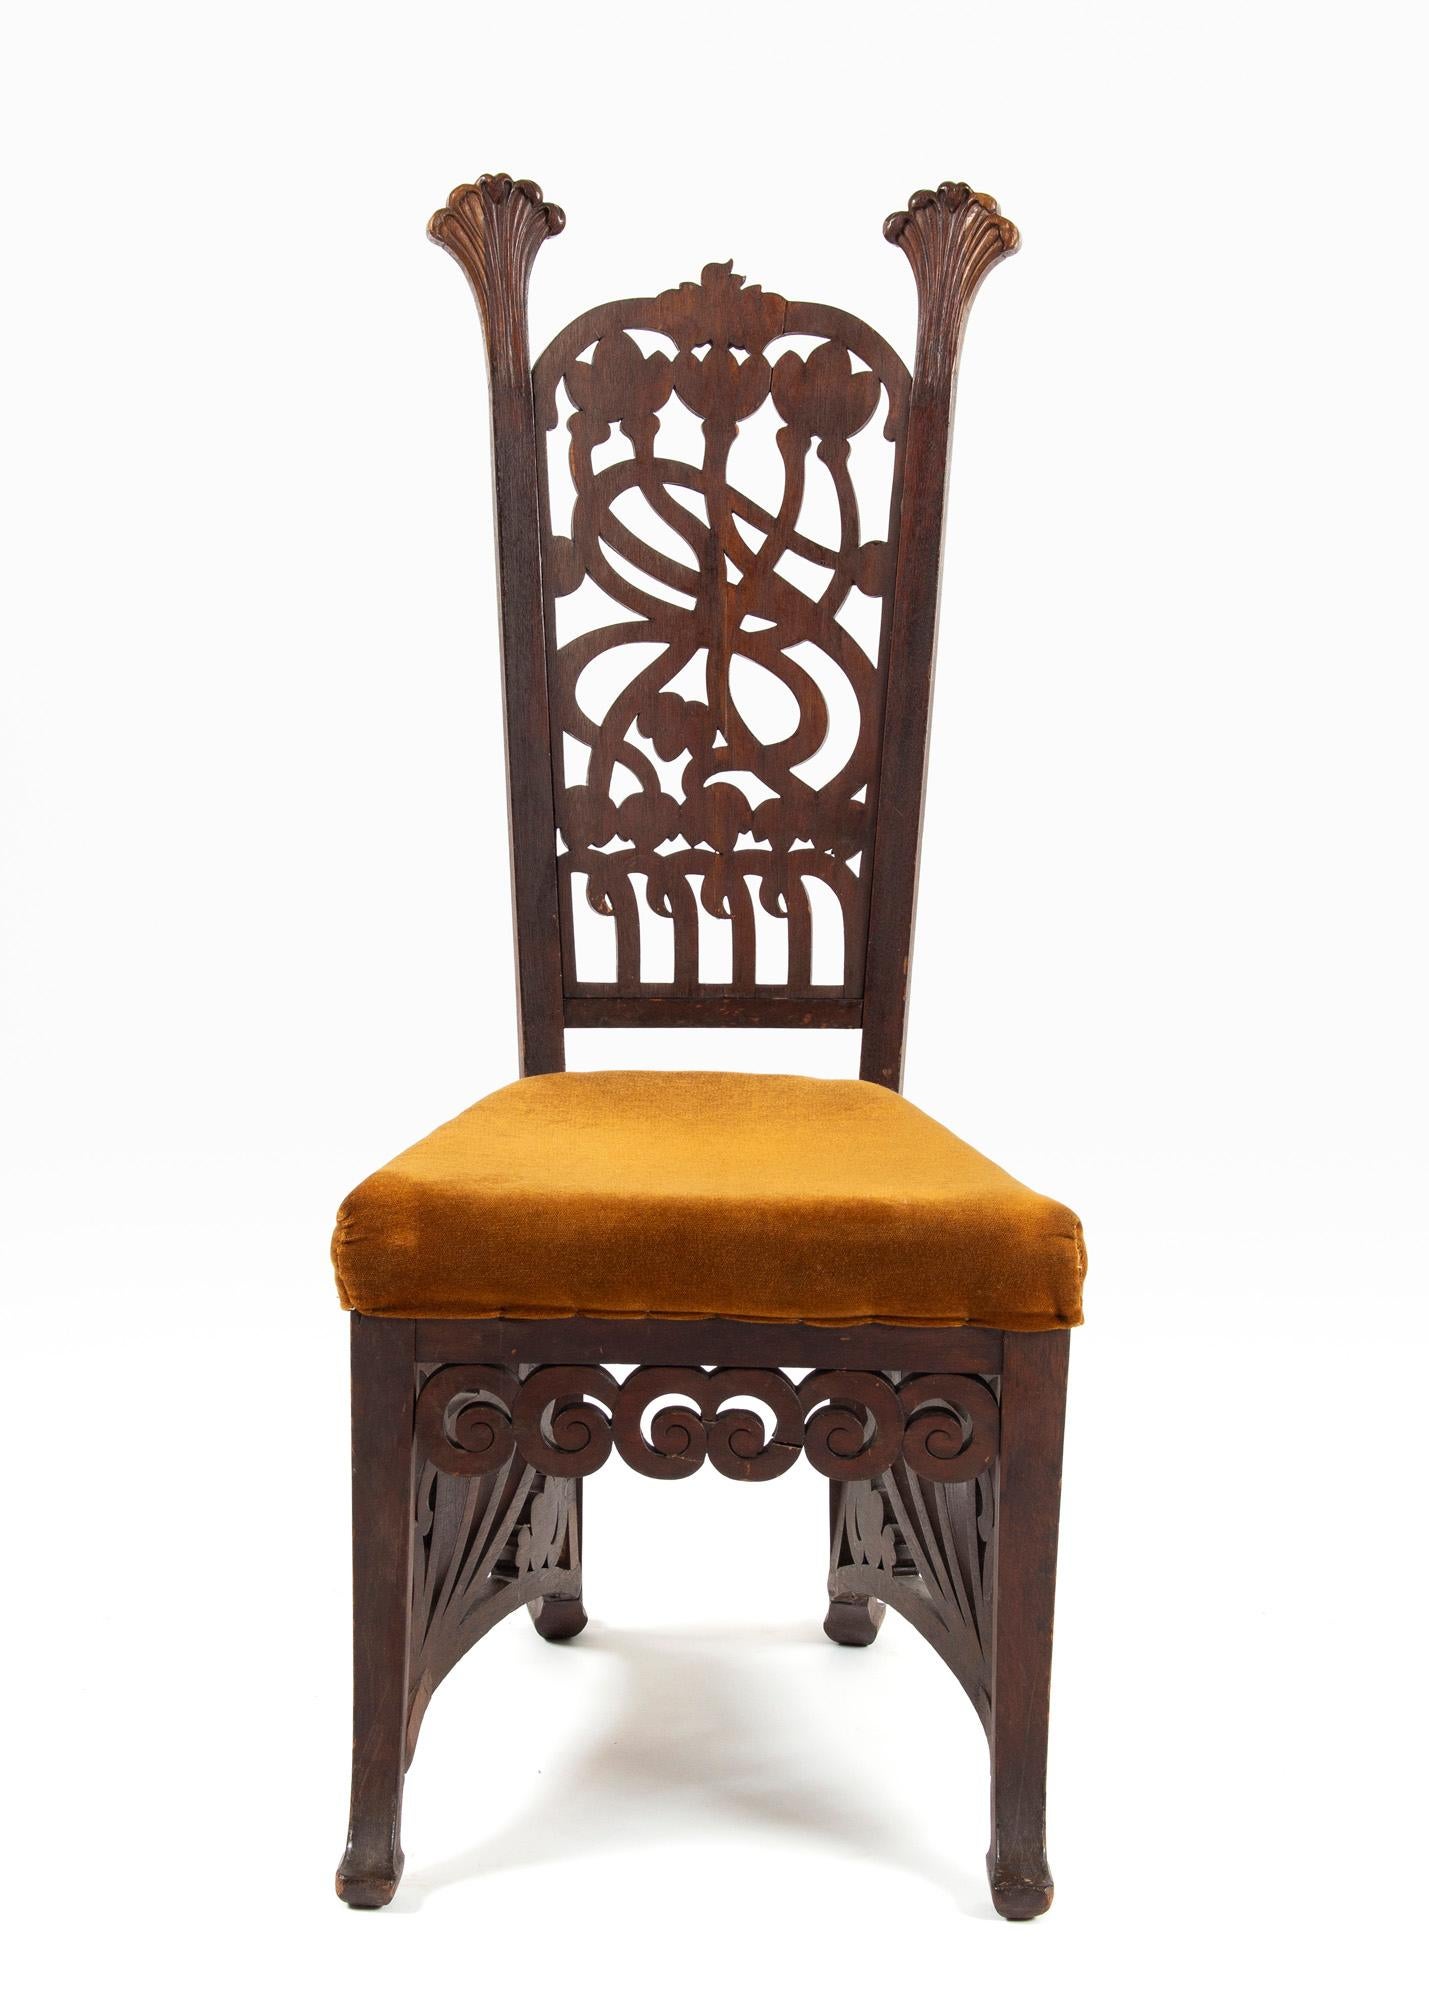 Unique Rippl-Rónai József Art Nouveau Chairs, circa 1900s For Sale 4